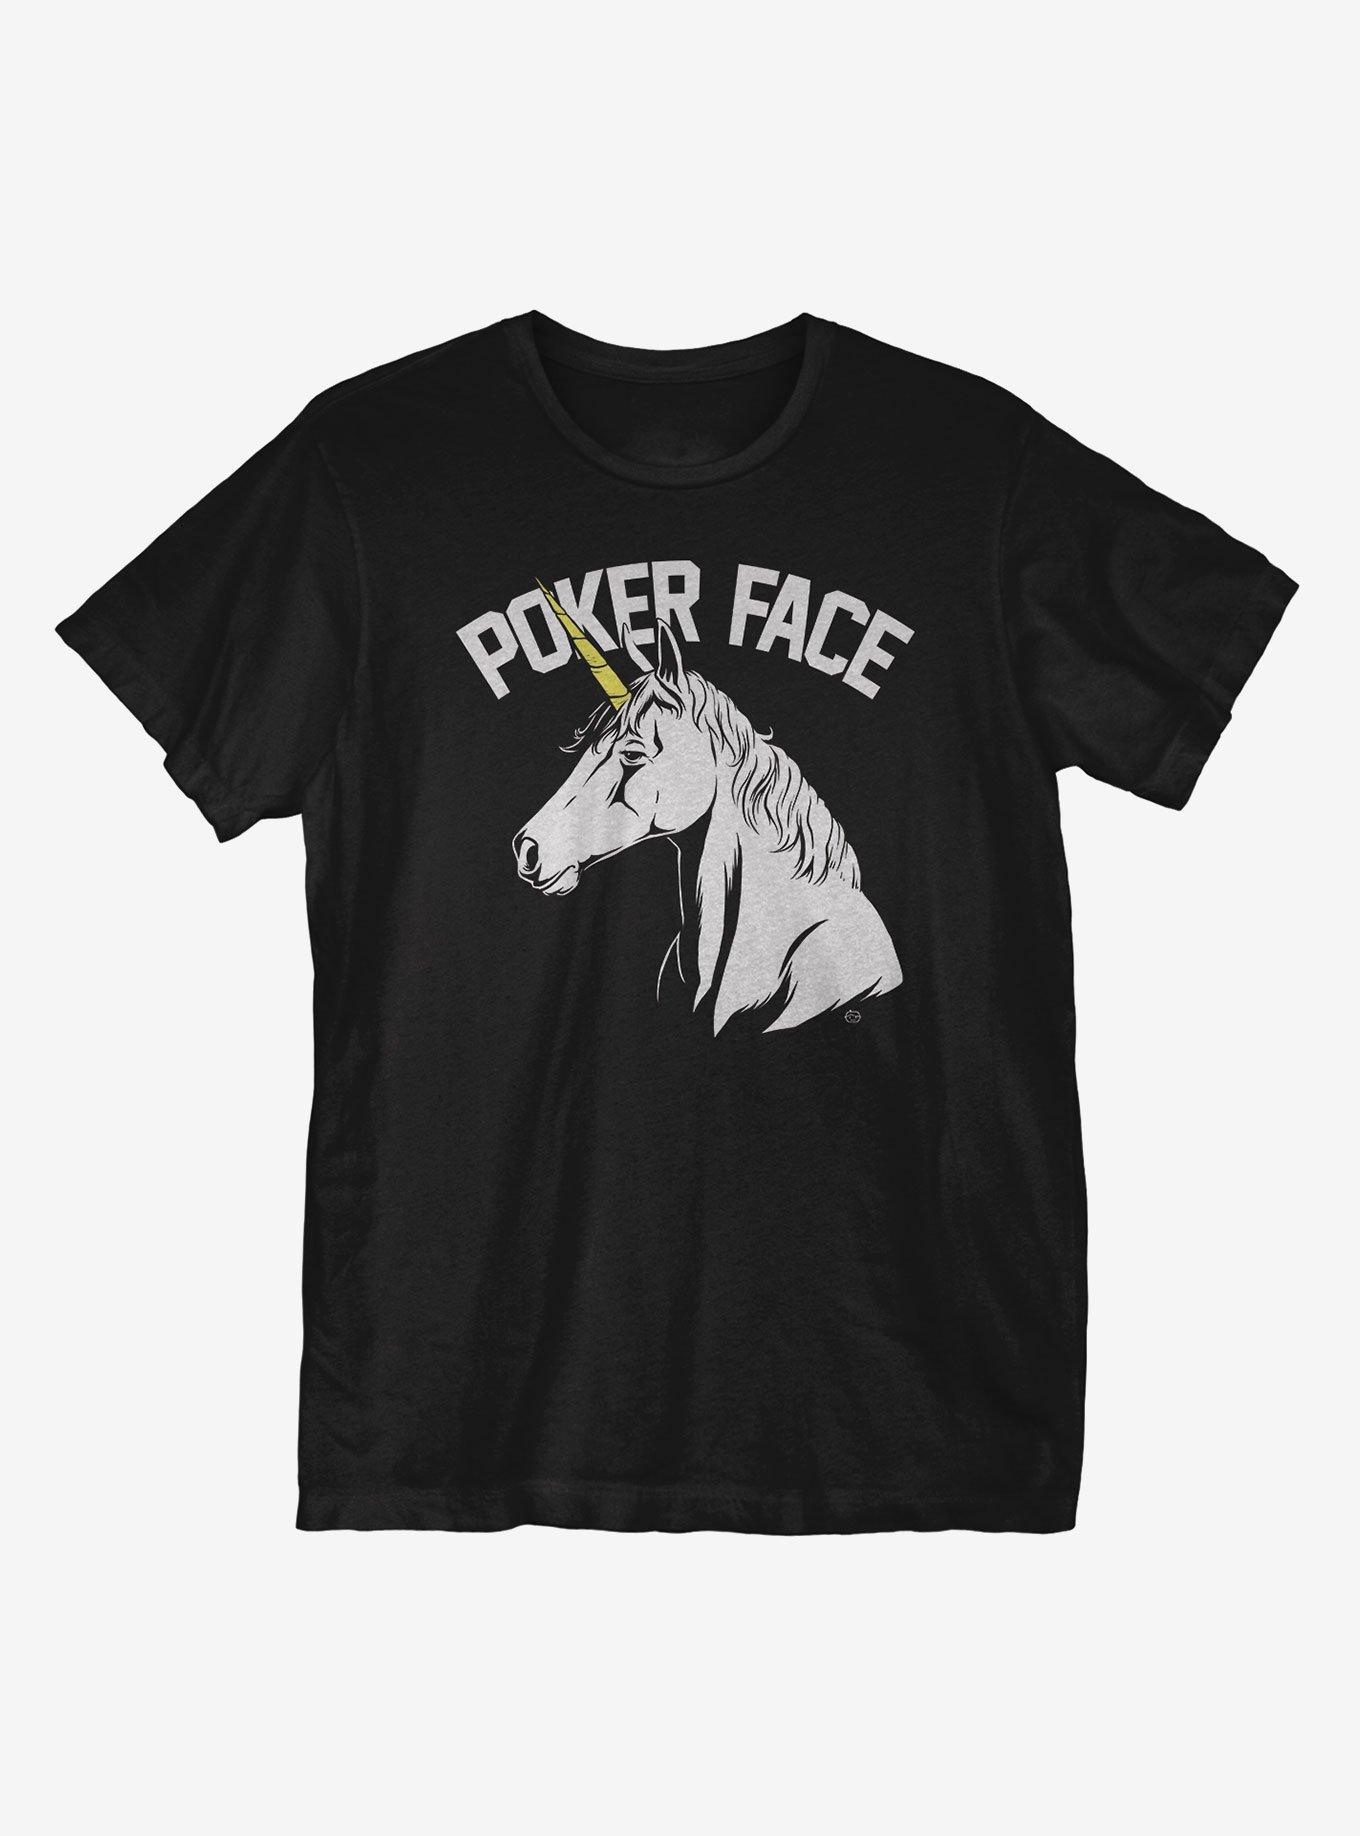 Poker Face T-Shirt